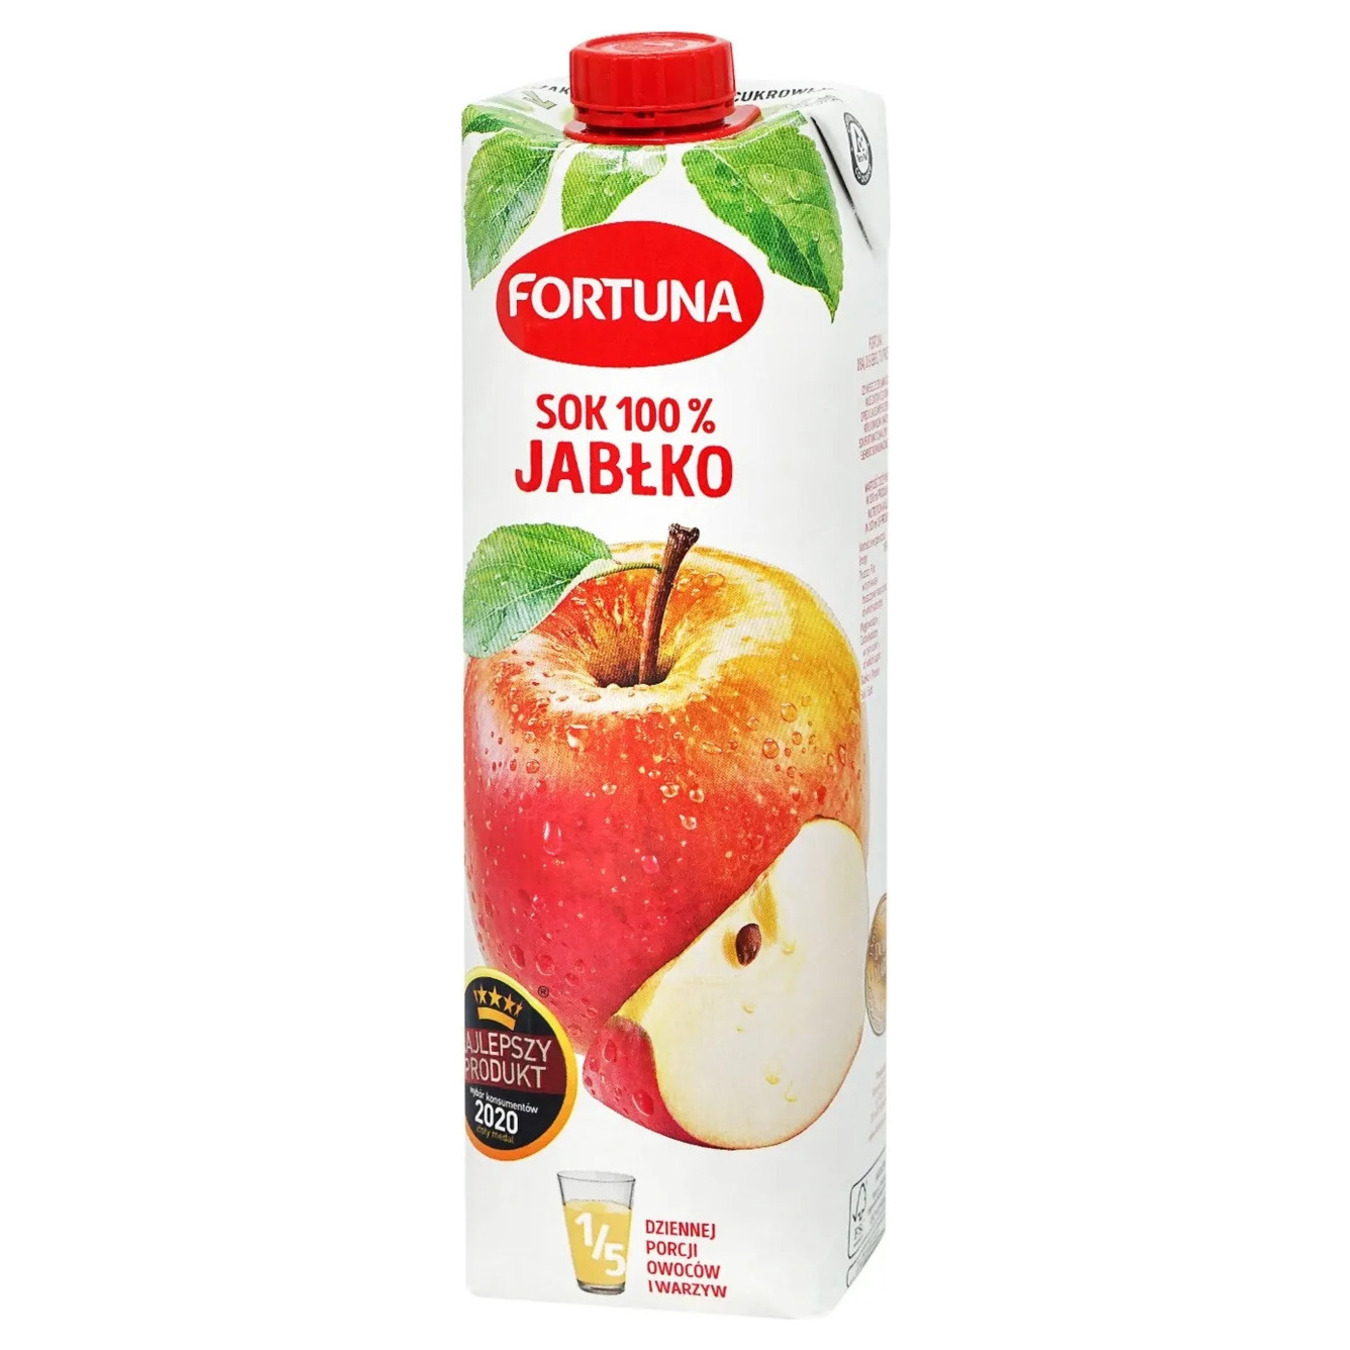 Fortuna apple juice 1 l 2